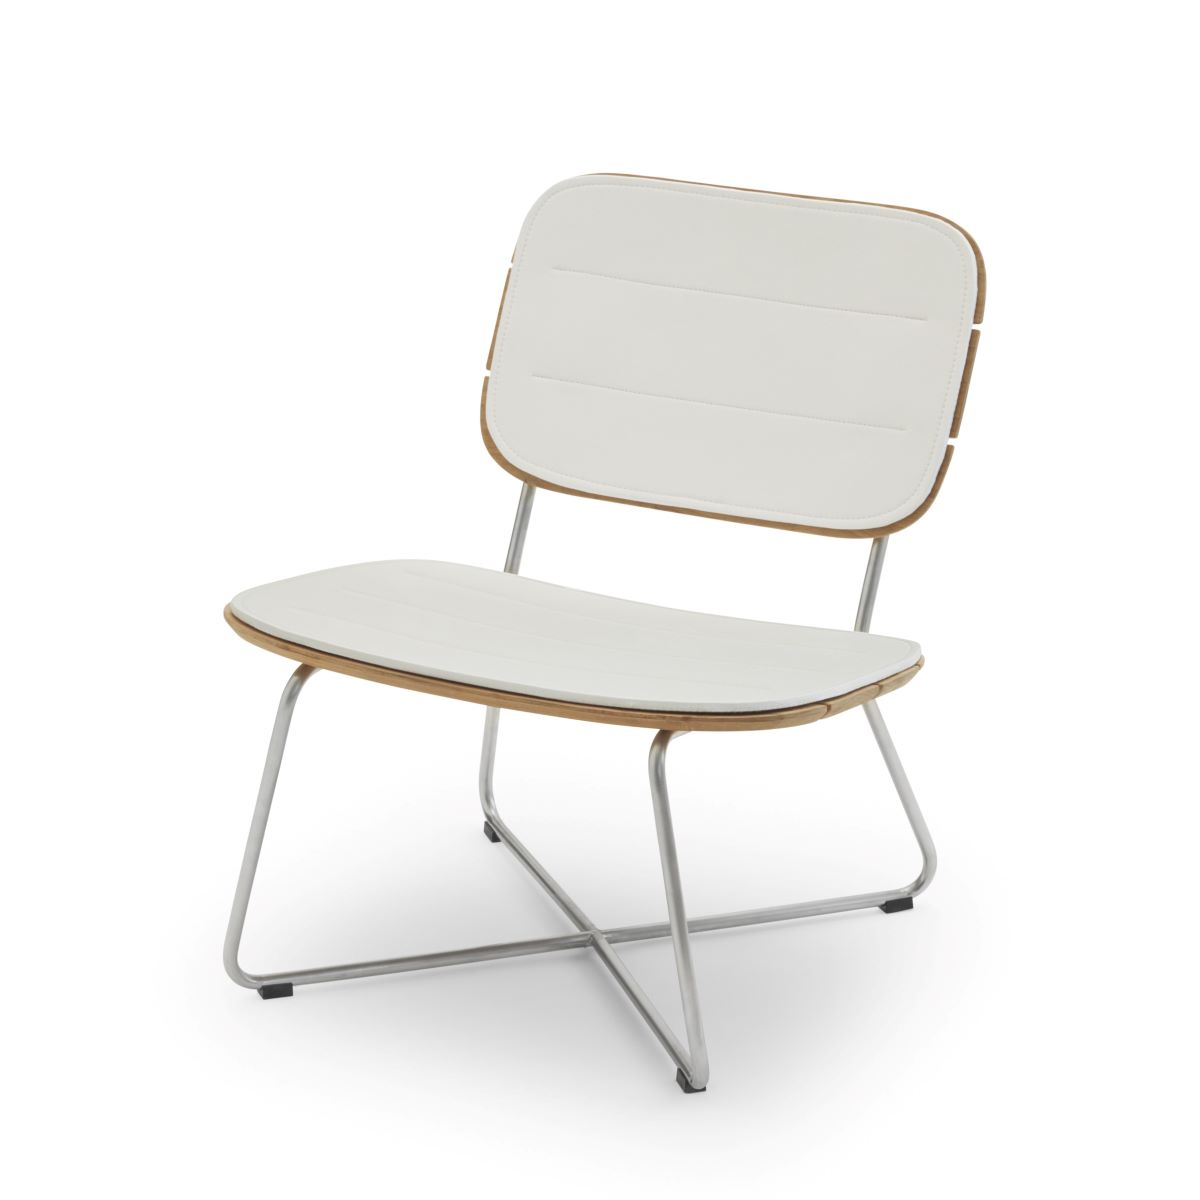 https://bo.alinhadavizinha.com/FileUploads/produtos/acessorios/exterior/1961013_lilium-lounge-chair-cushion_branco_1.jpg